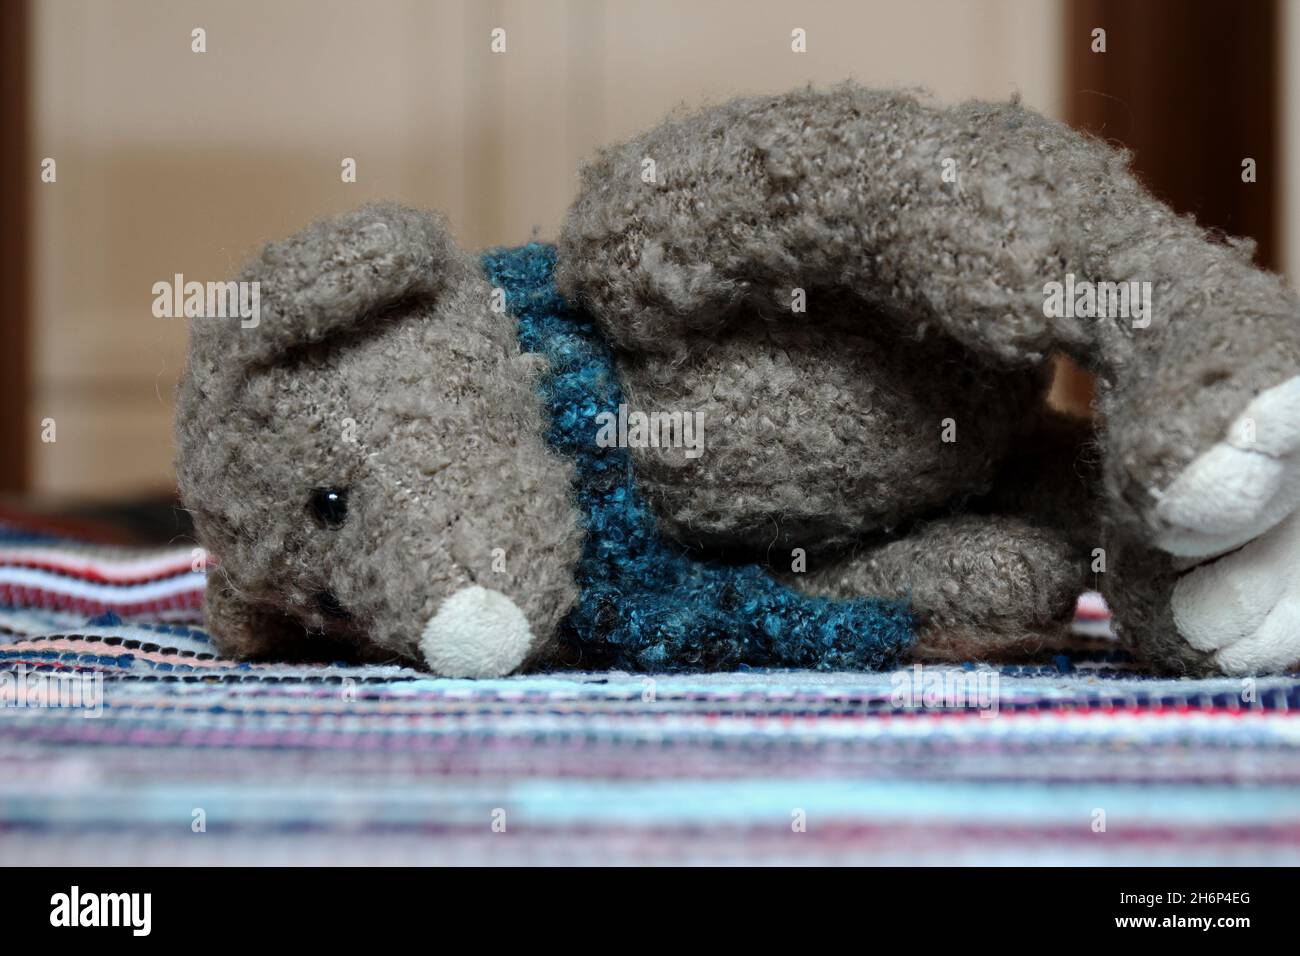 Ein Kuscheltier, Teddy, mit einem blauen Schal, liegend auf einem bunten Teppich. Banque D'Images